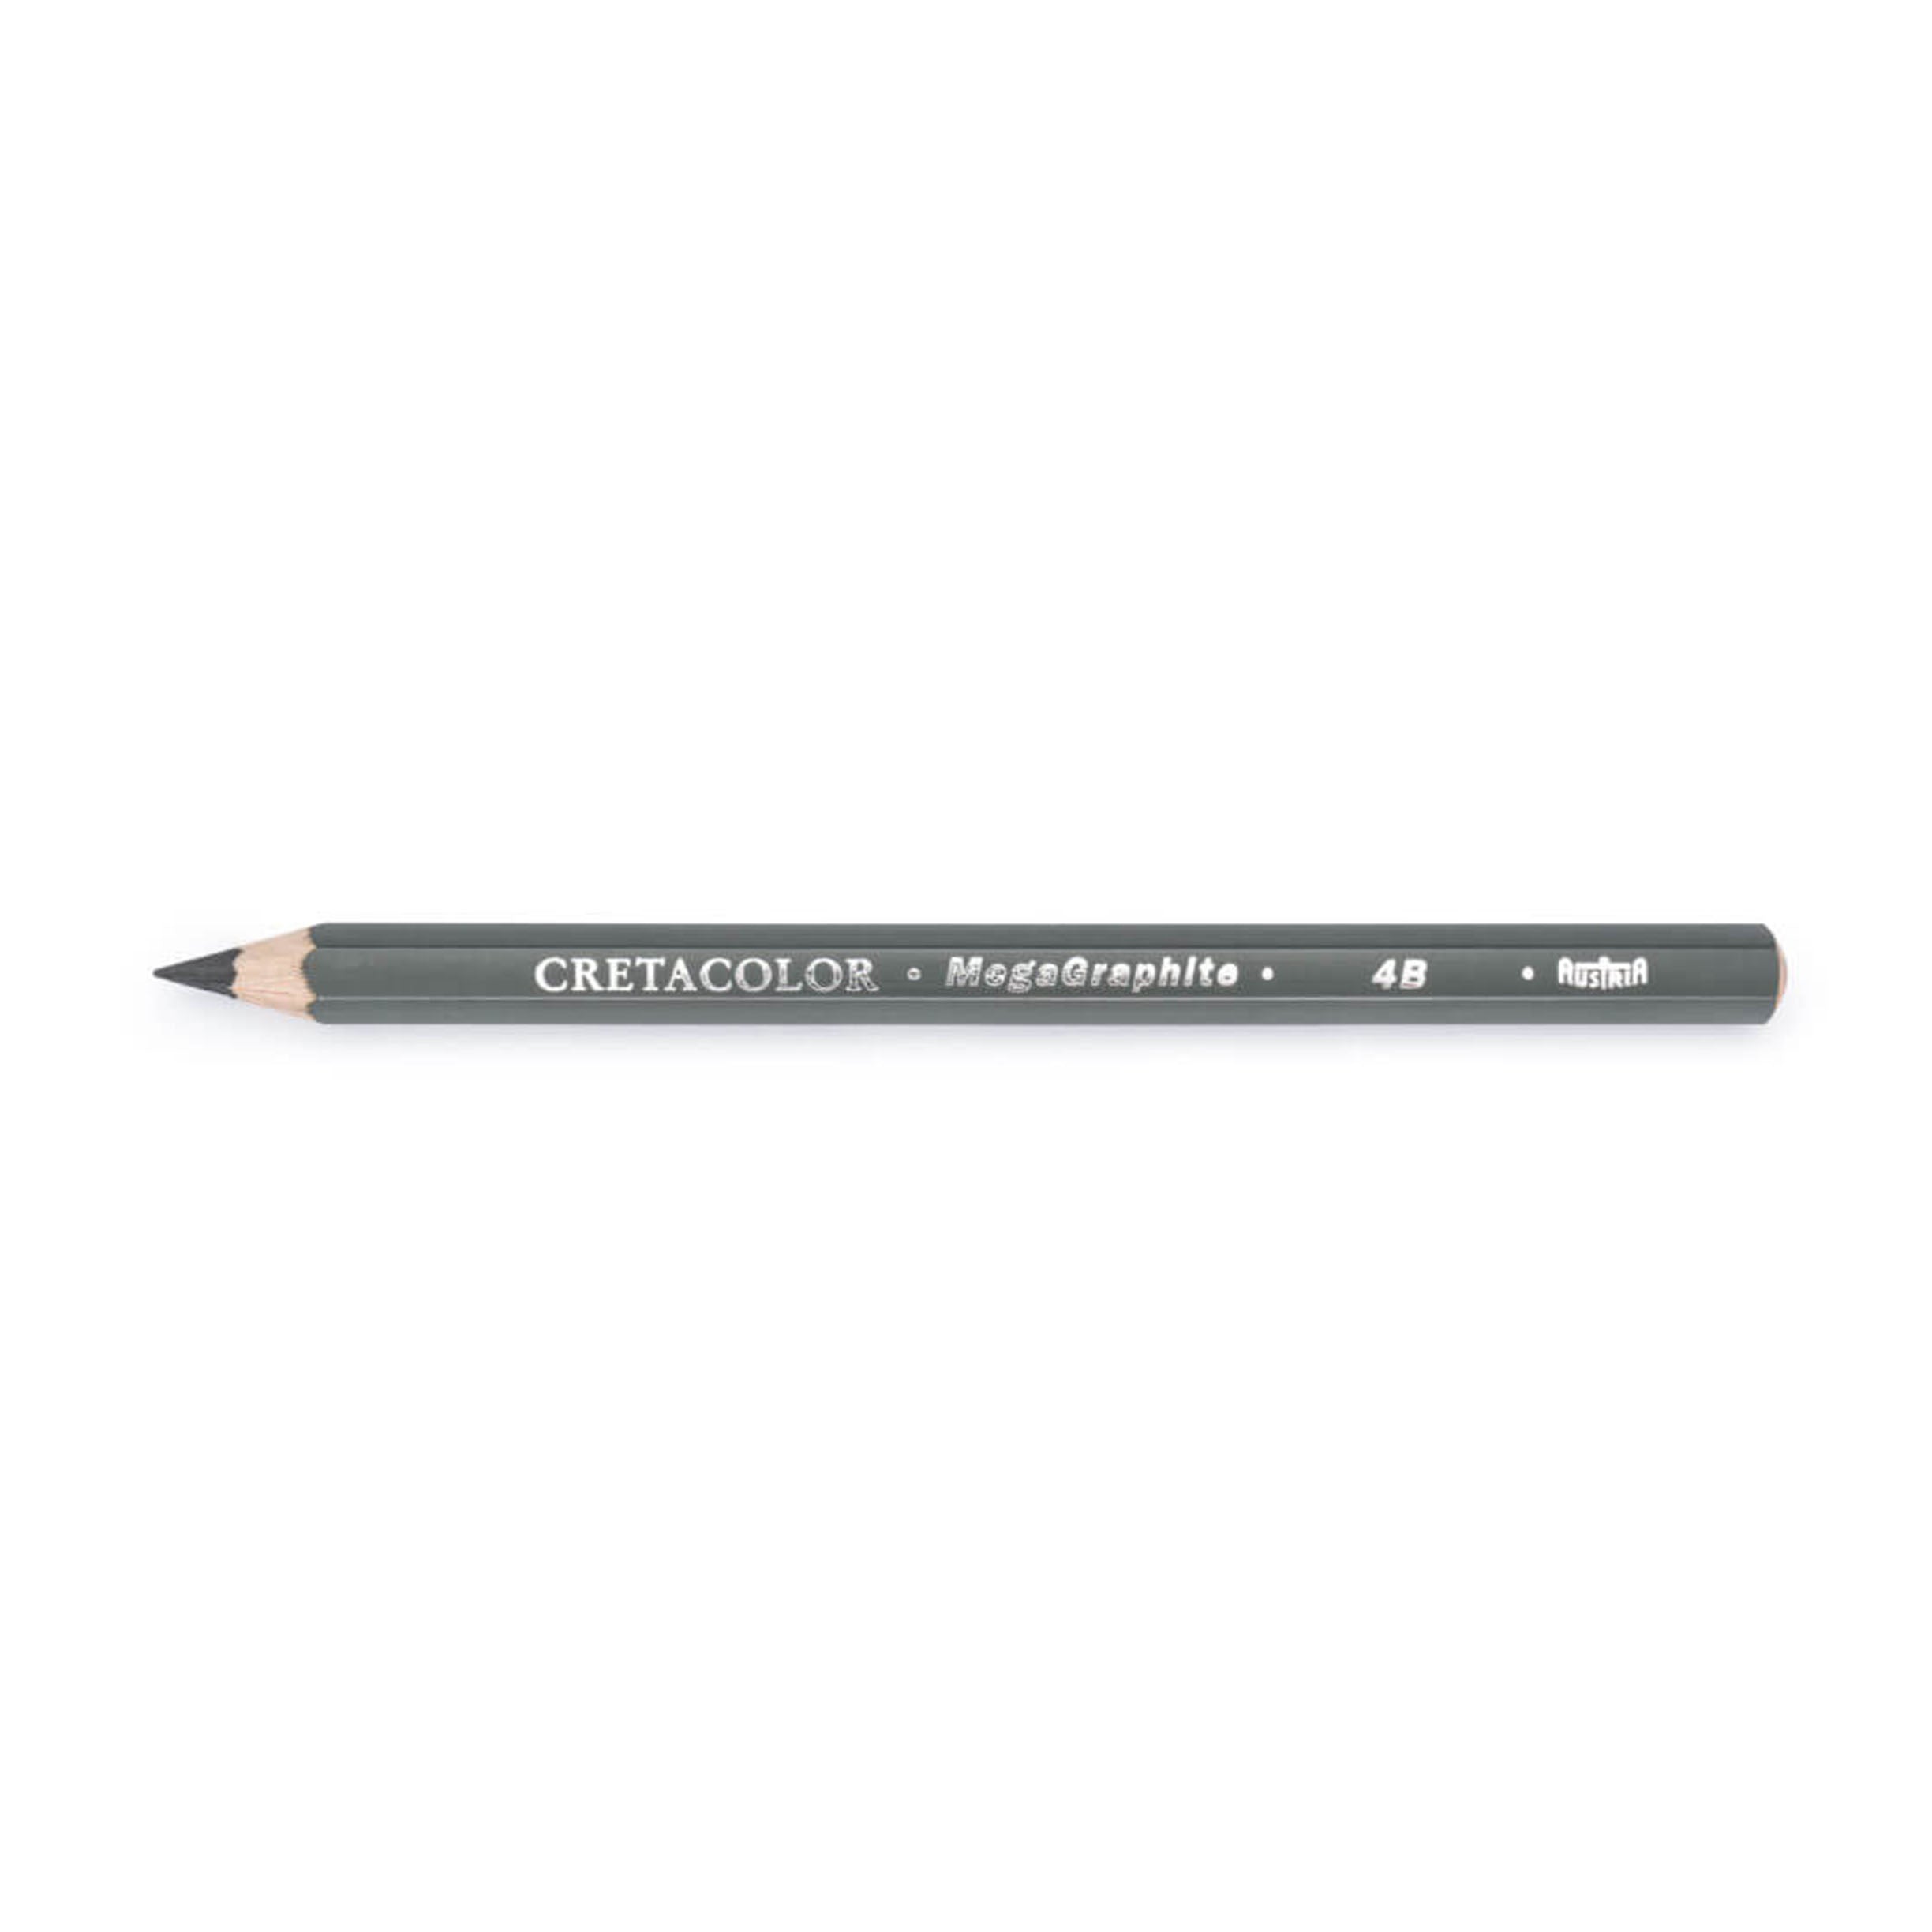 Cretacolor MegaGraphite Pencil